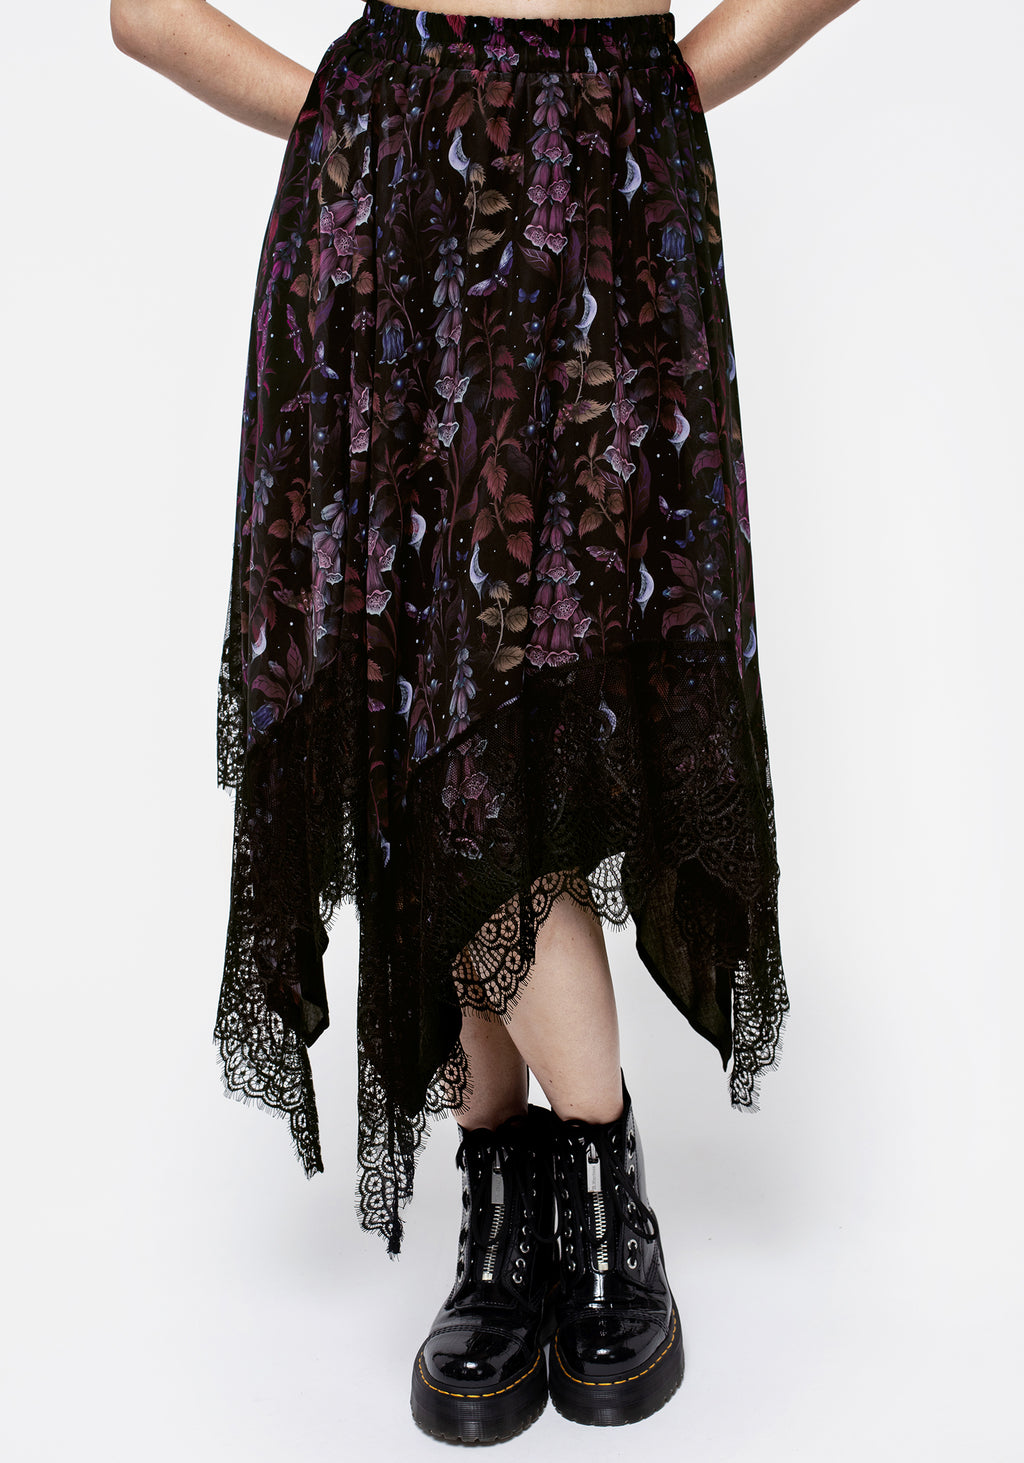 Foxglove Chiffon Handkerchief Hem Skirt – Disturbia